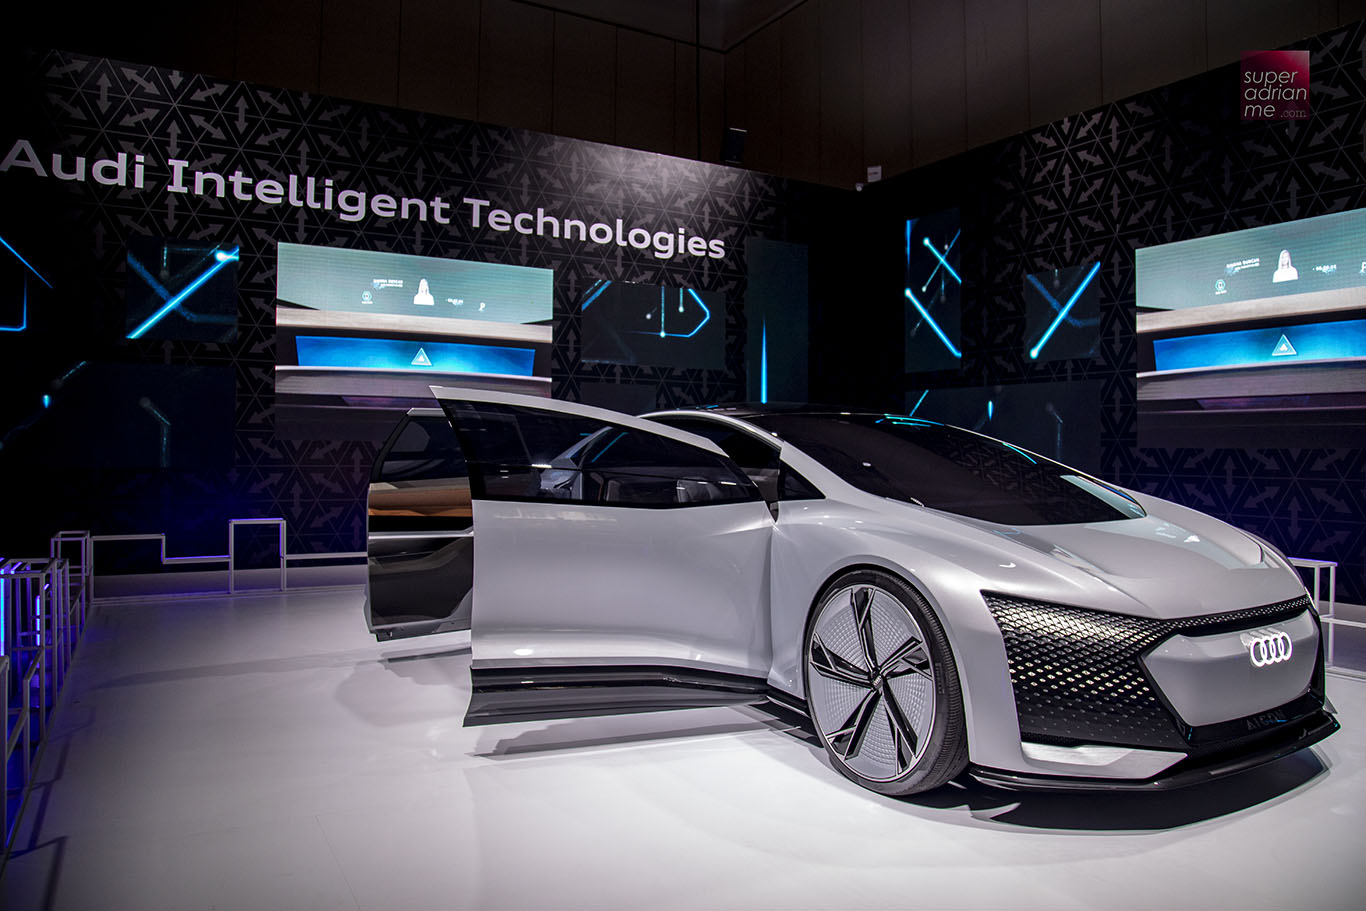 Audi Aicon level 5 autonomous luxury sedan -concept car